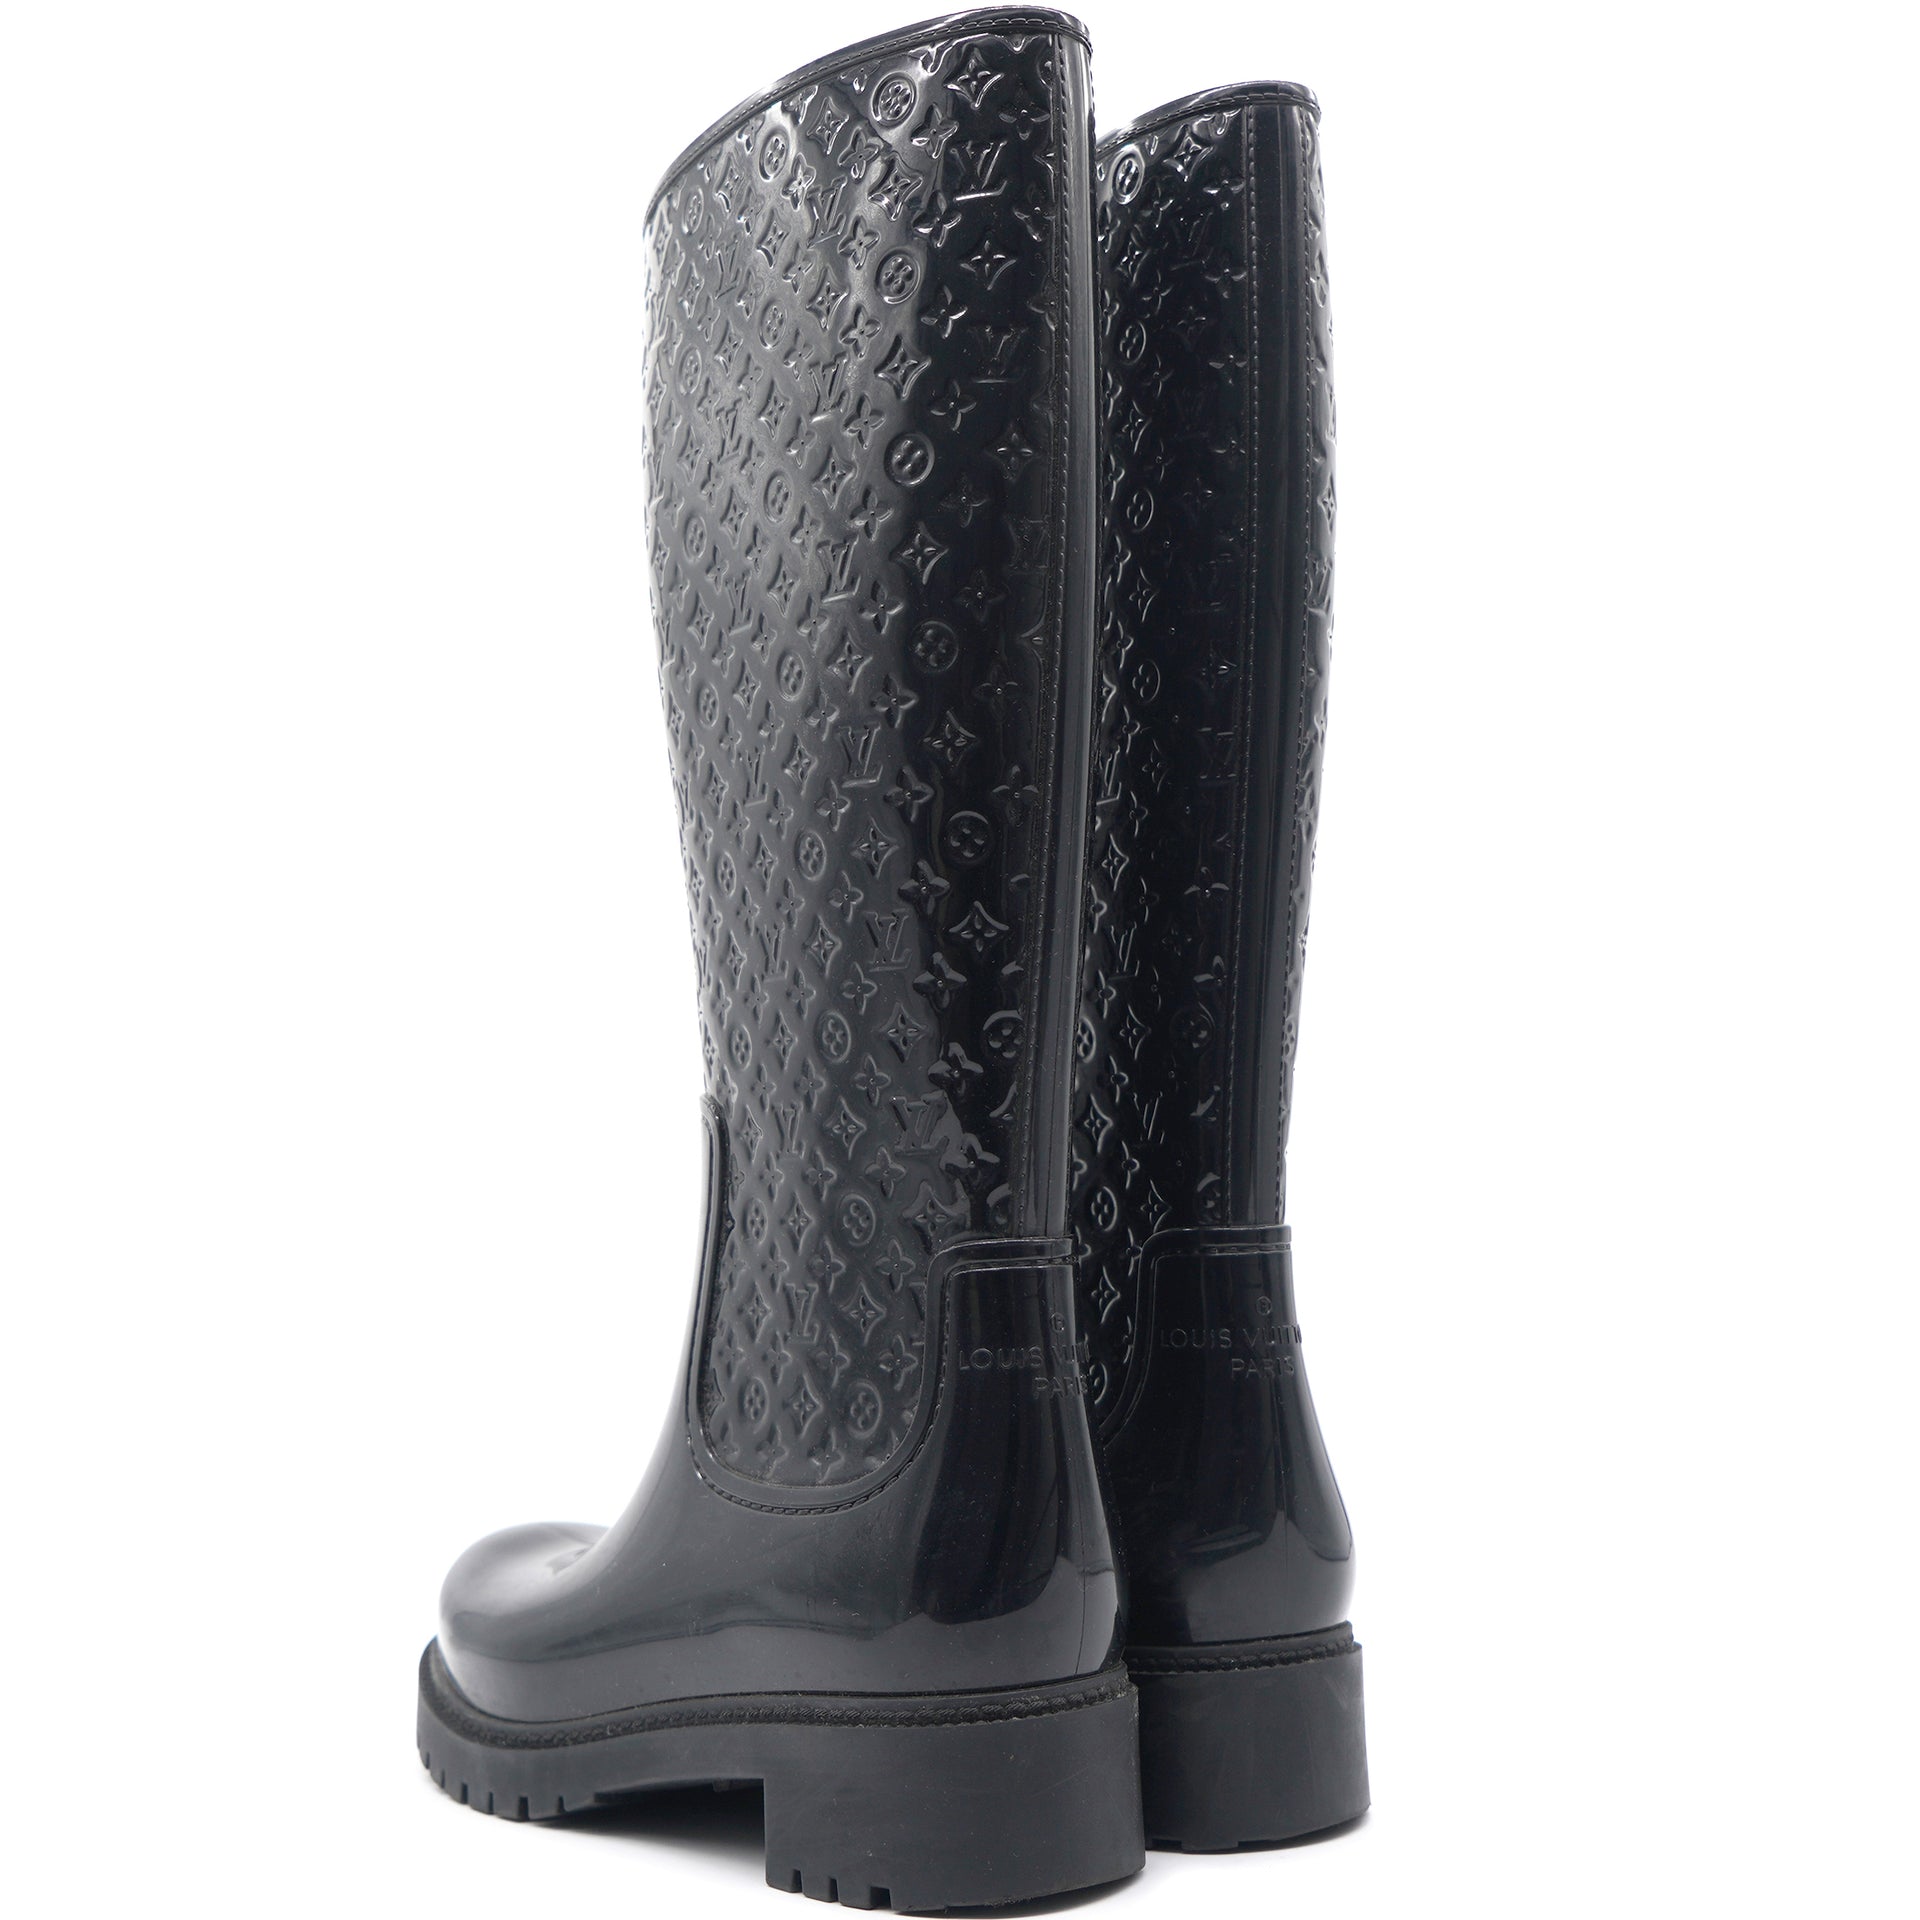 Wellington boots Louis Vuitton Black size 40 EU in Rubber - 37312641